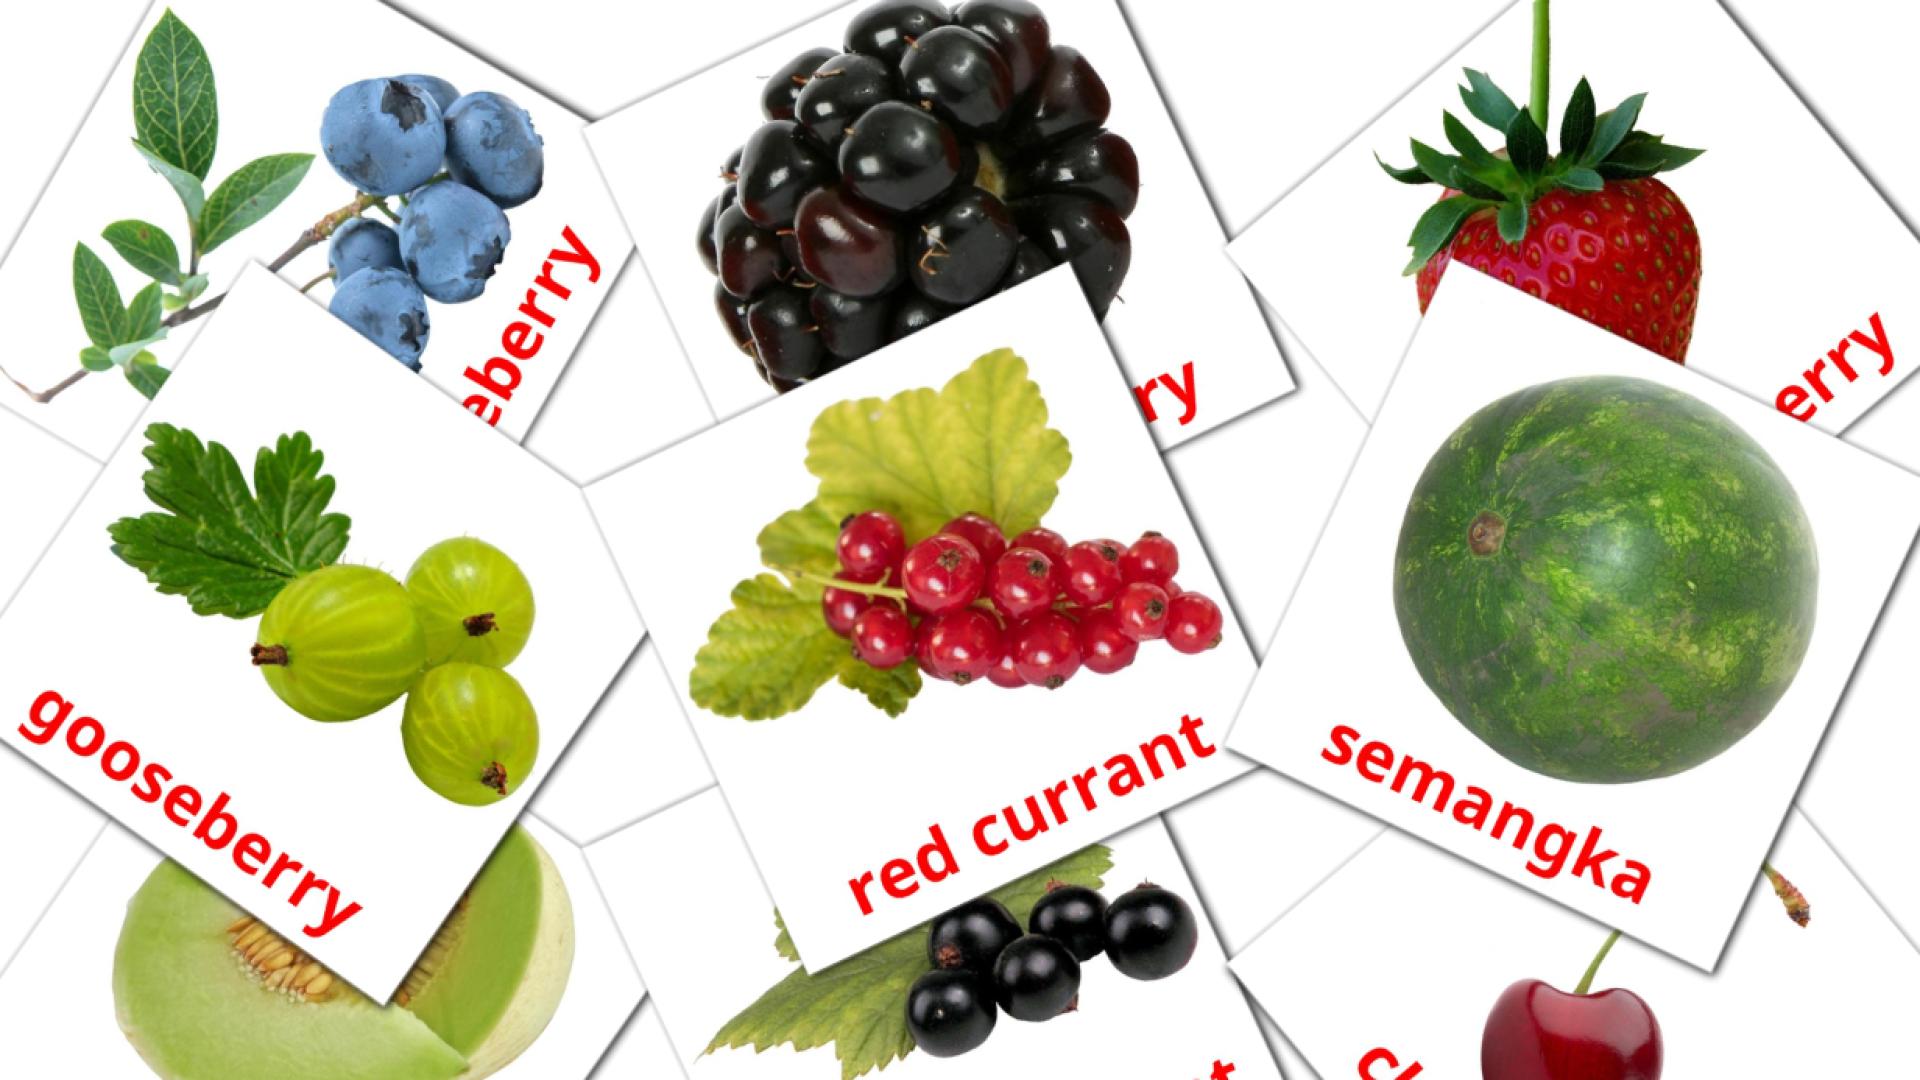 11 Bildkarten für Berries